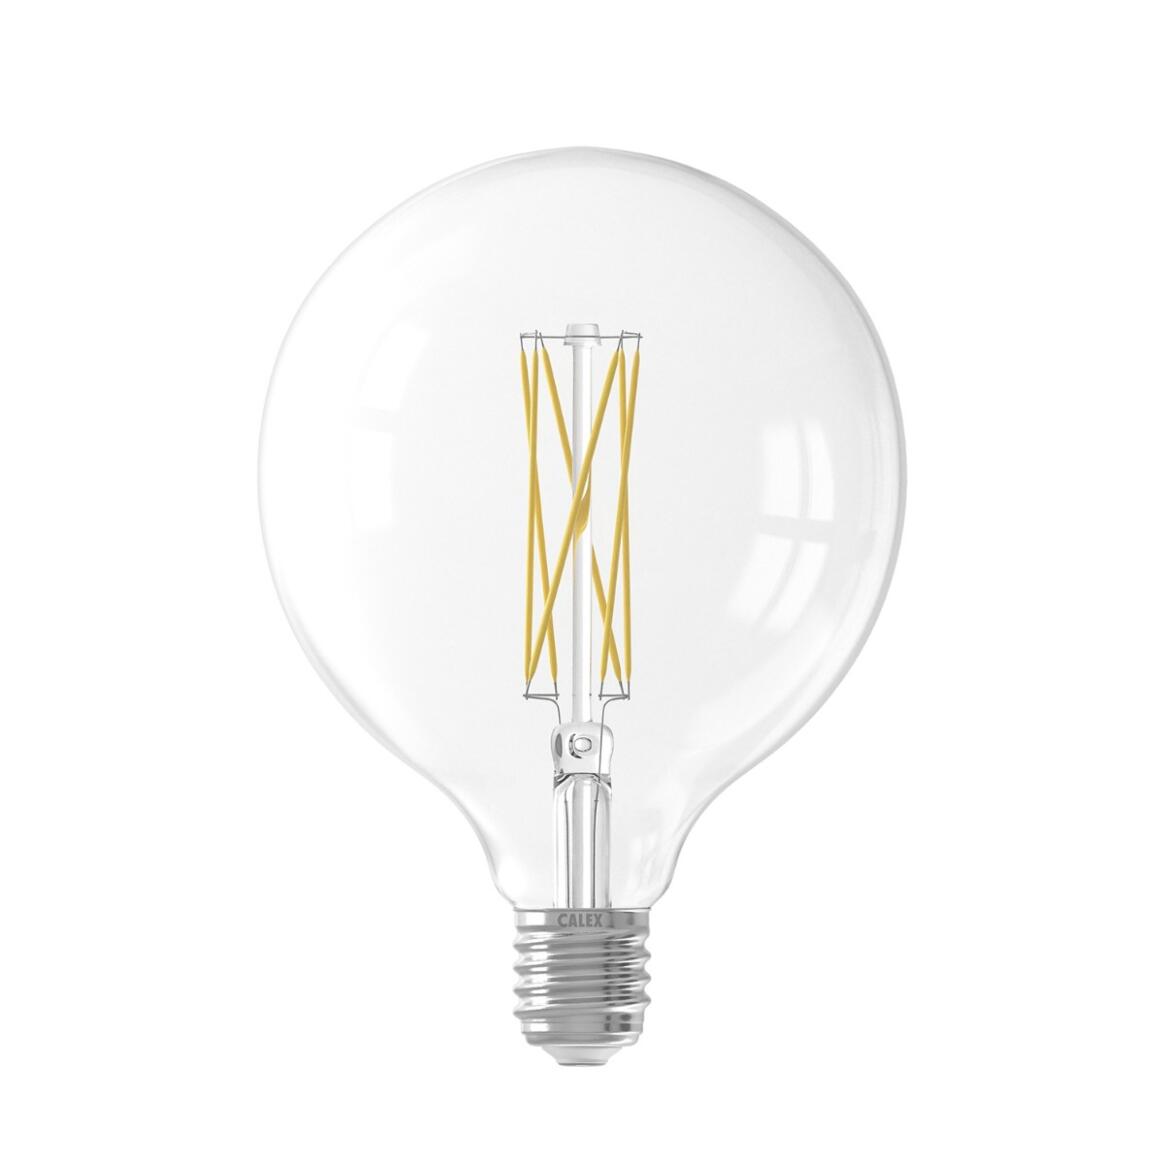 Ampoule LED à globe transparent à filament, variable d'intensité G125 E27 4W 2300K 350lm 12.5cm main product image